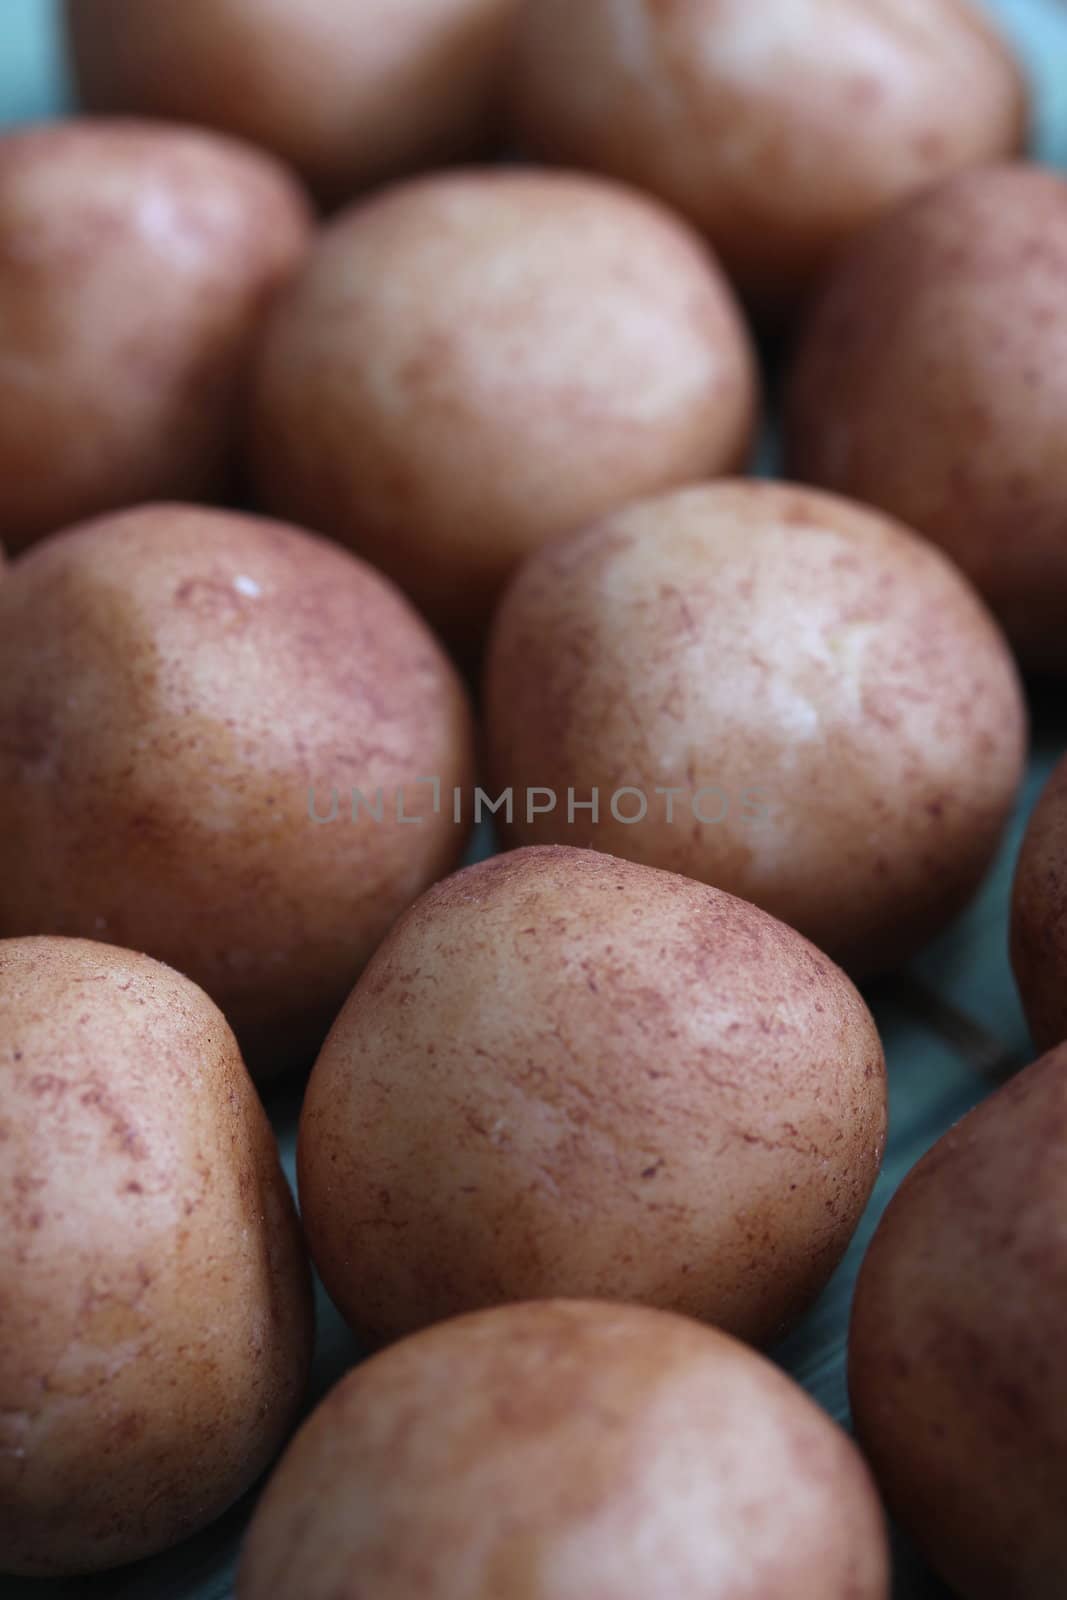 marzipan potatoes by Teka77